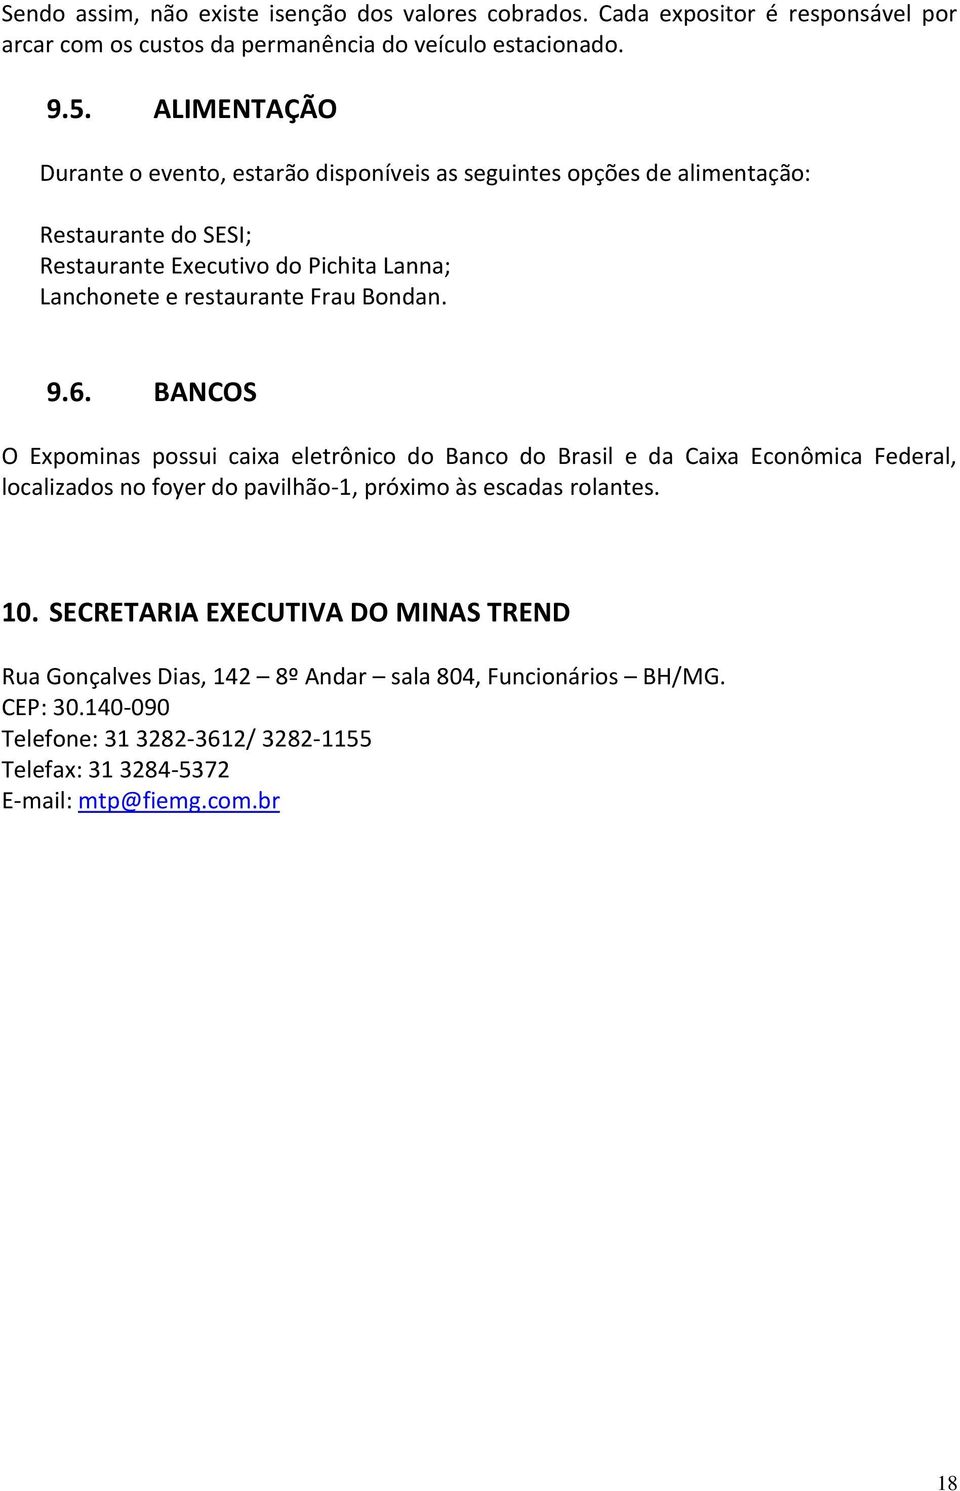 Frau Bondan. 9.6. BANCOS O Expominas possui caixa eletrônico do Banco do Brasil e da Caixa Econômica Federal, localizados no foyer do pavilhão-1, próximo às escadas rolantes.